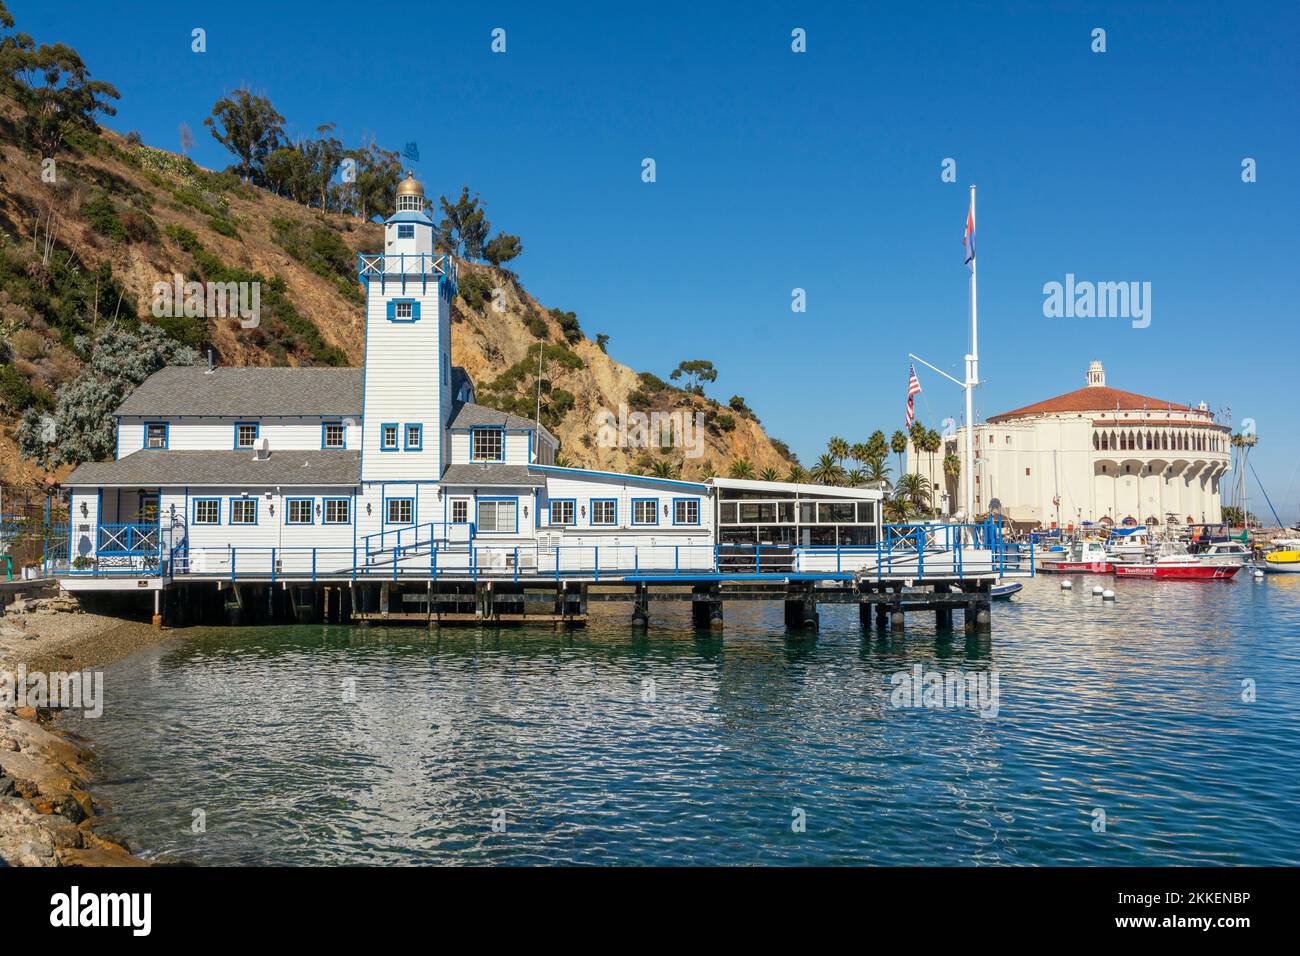 California, Catalina Island, Via Casino, Avalon Harbor, Catalina Island Yacht Club founded 1924, Casino (R) Stock Photo